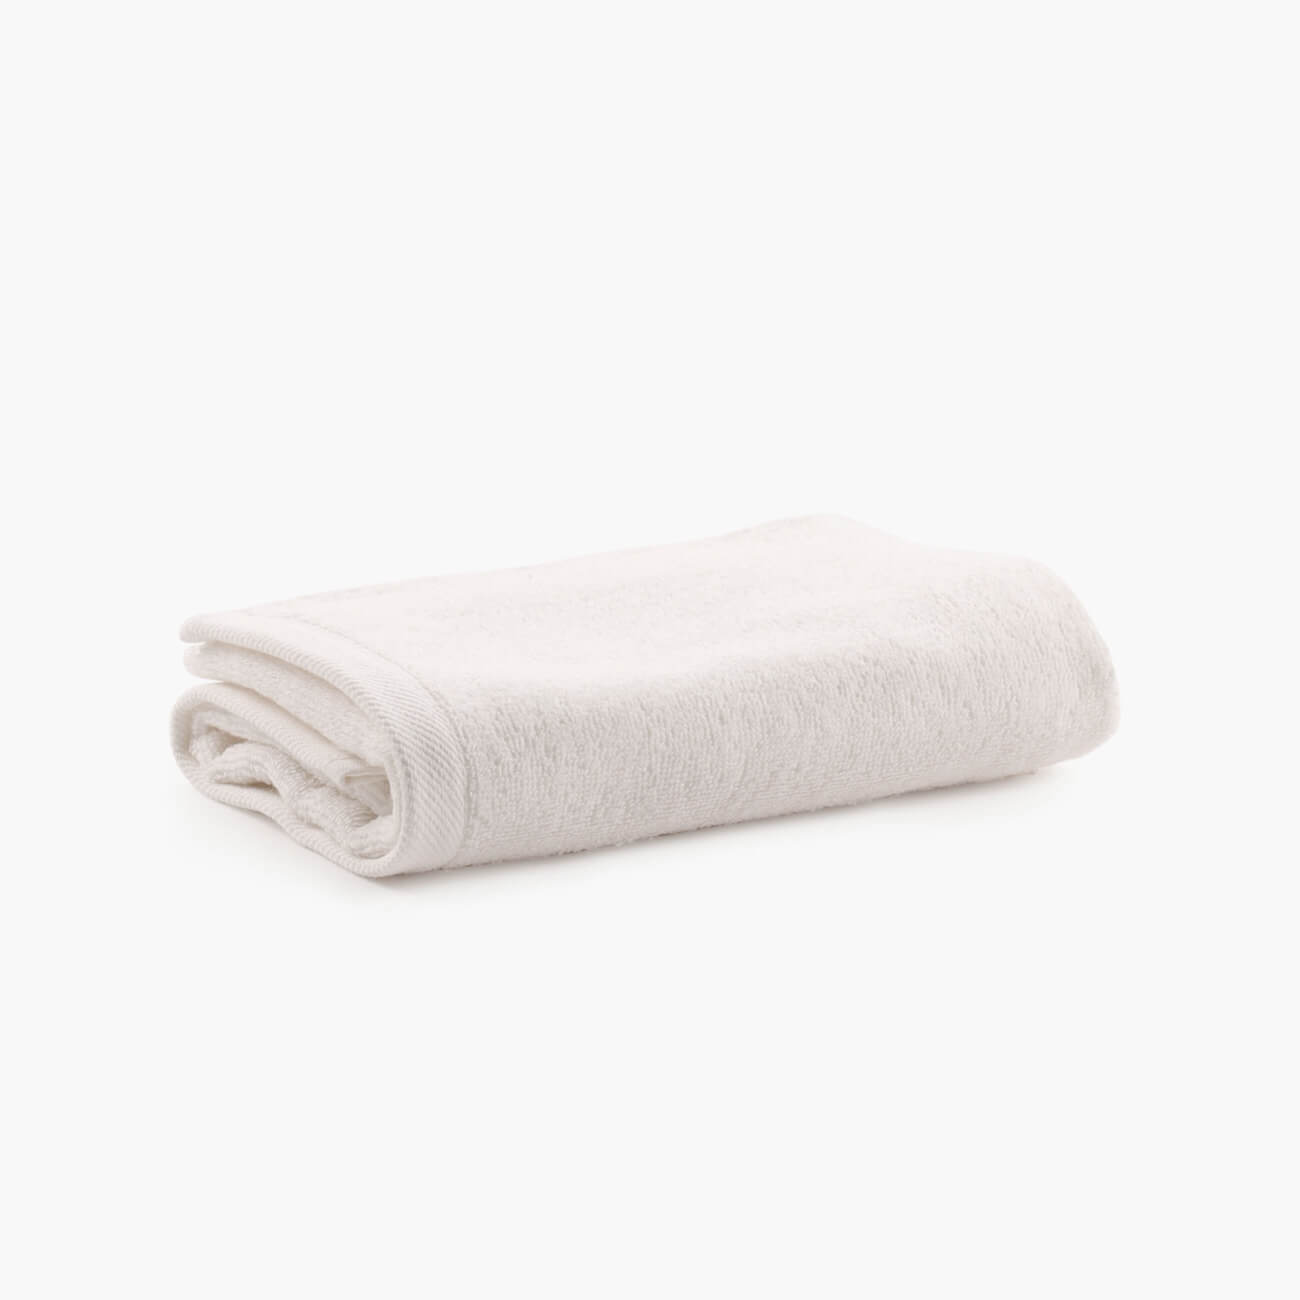 Полотенце, 40х60 см, хлопок, молочное, Wellness бумажное полотенце лайма